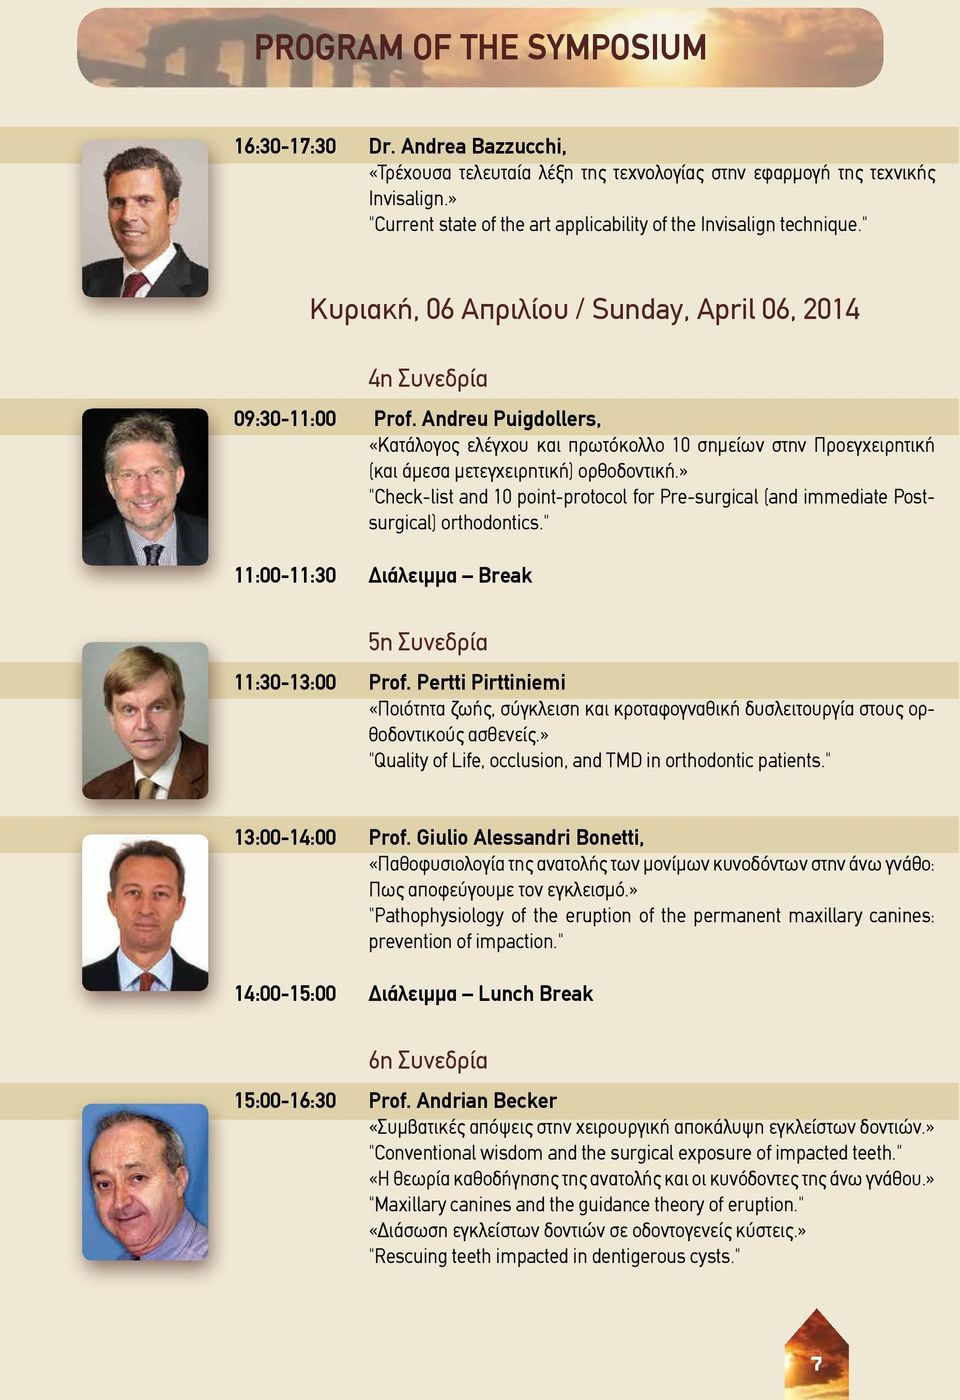 " Κυριακή, 06 Απριλίου / Sunday, April 06, 2014 4η Συνεδρία 09:30-11:00 Prof.